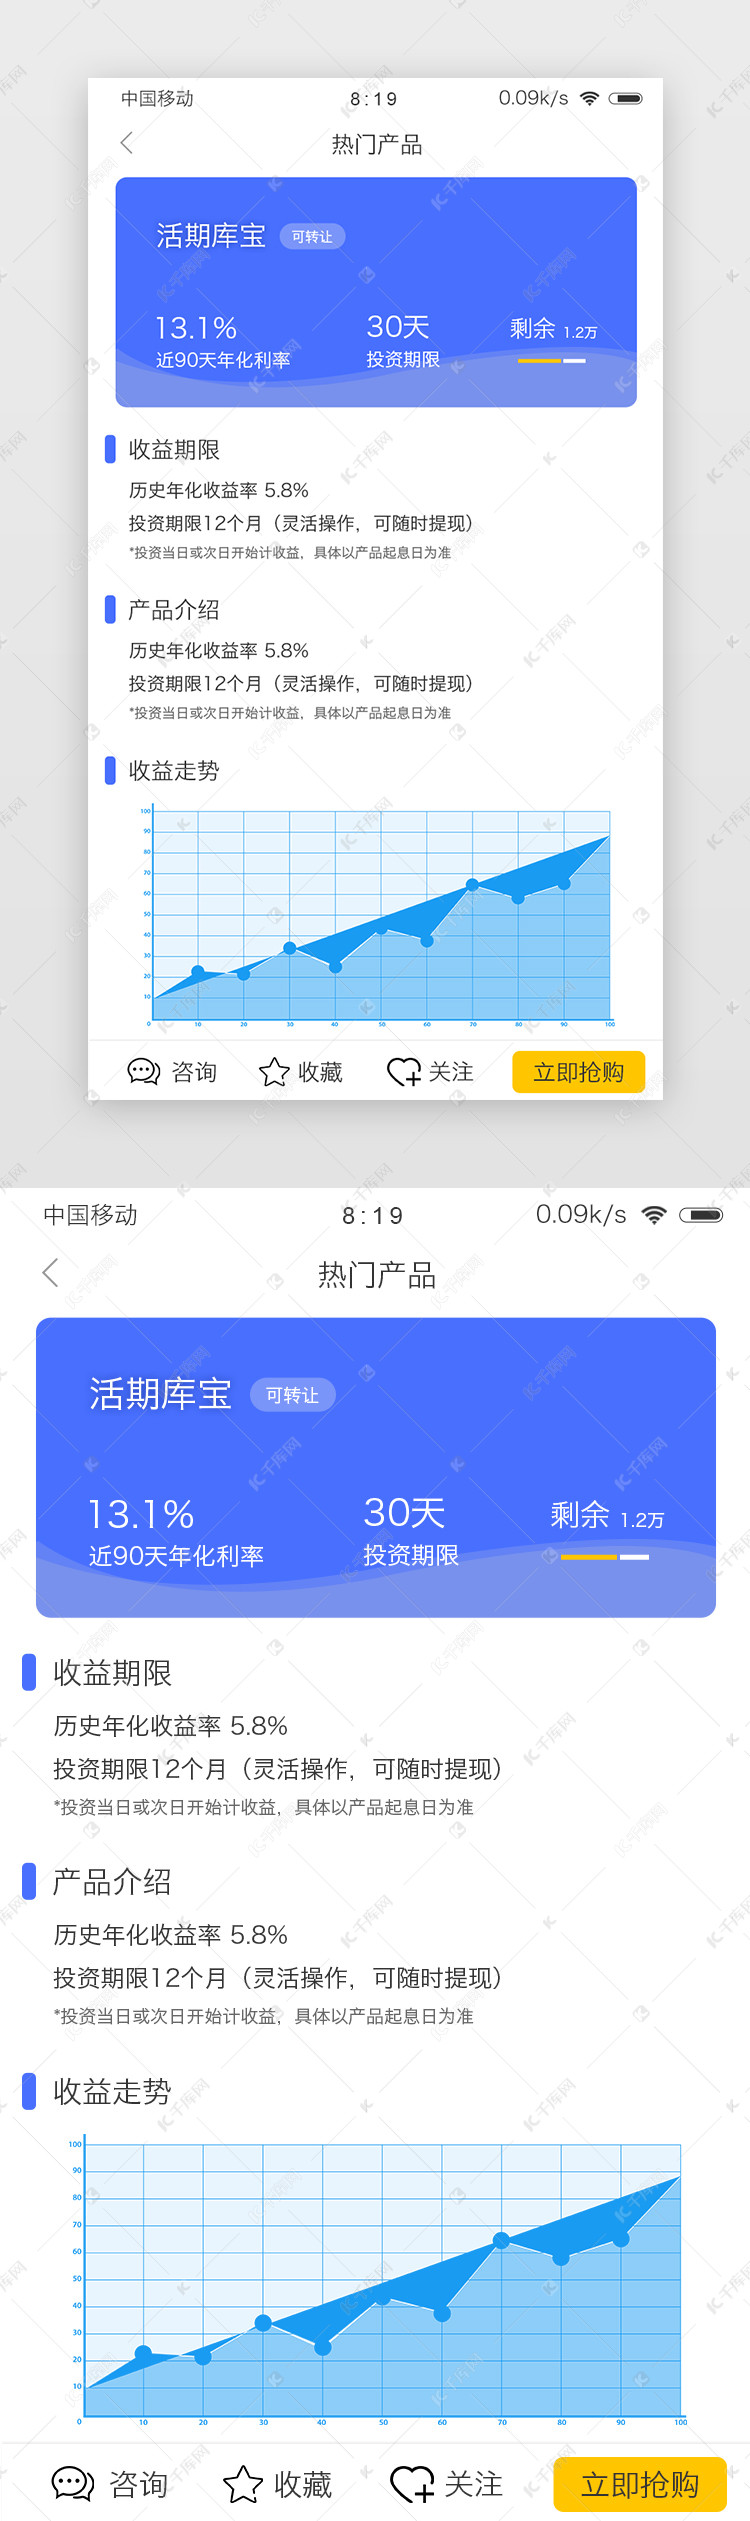 蓝色简约投资资讯app其他页